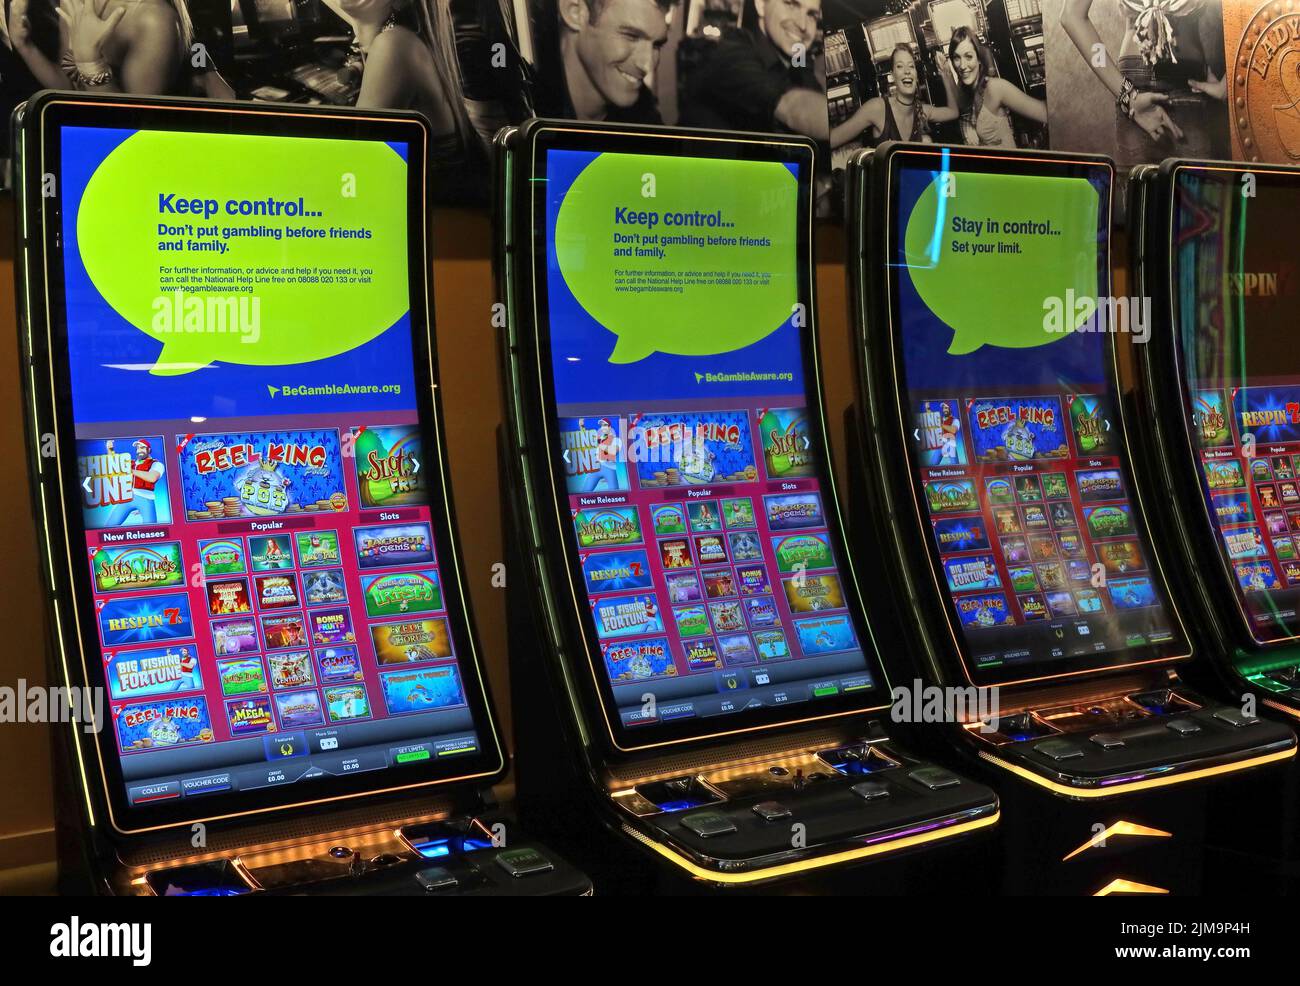 Spielautomaten, einarmige Banditen, Cash-Videospiele, bei Motorway Services M6, England, Großbritannien. Gefahren des gelegentlichen Glücksspiels Stockfoto